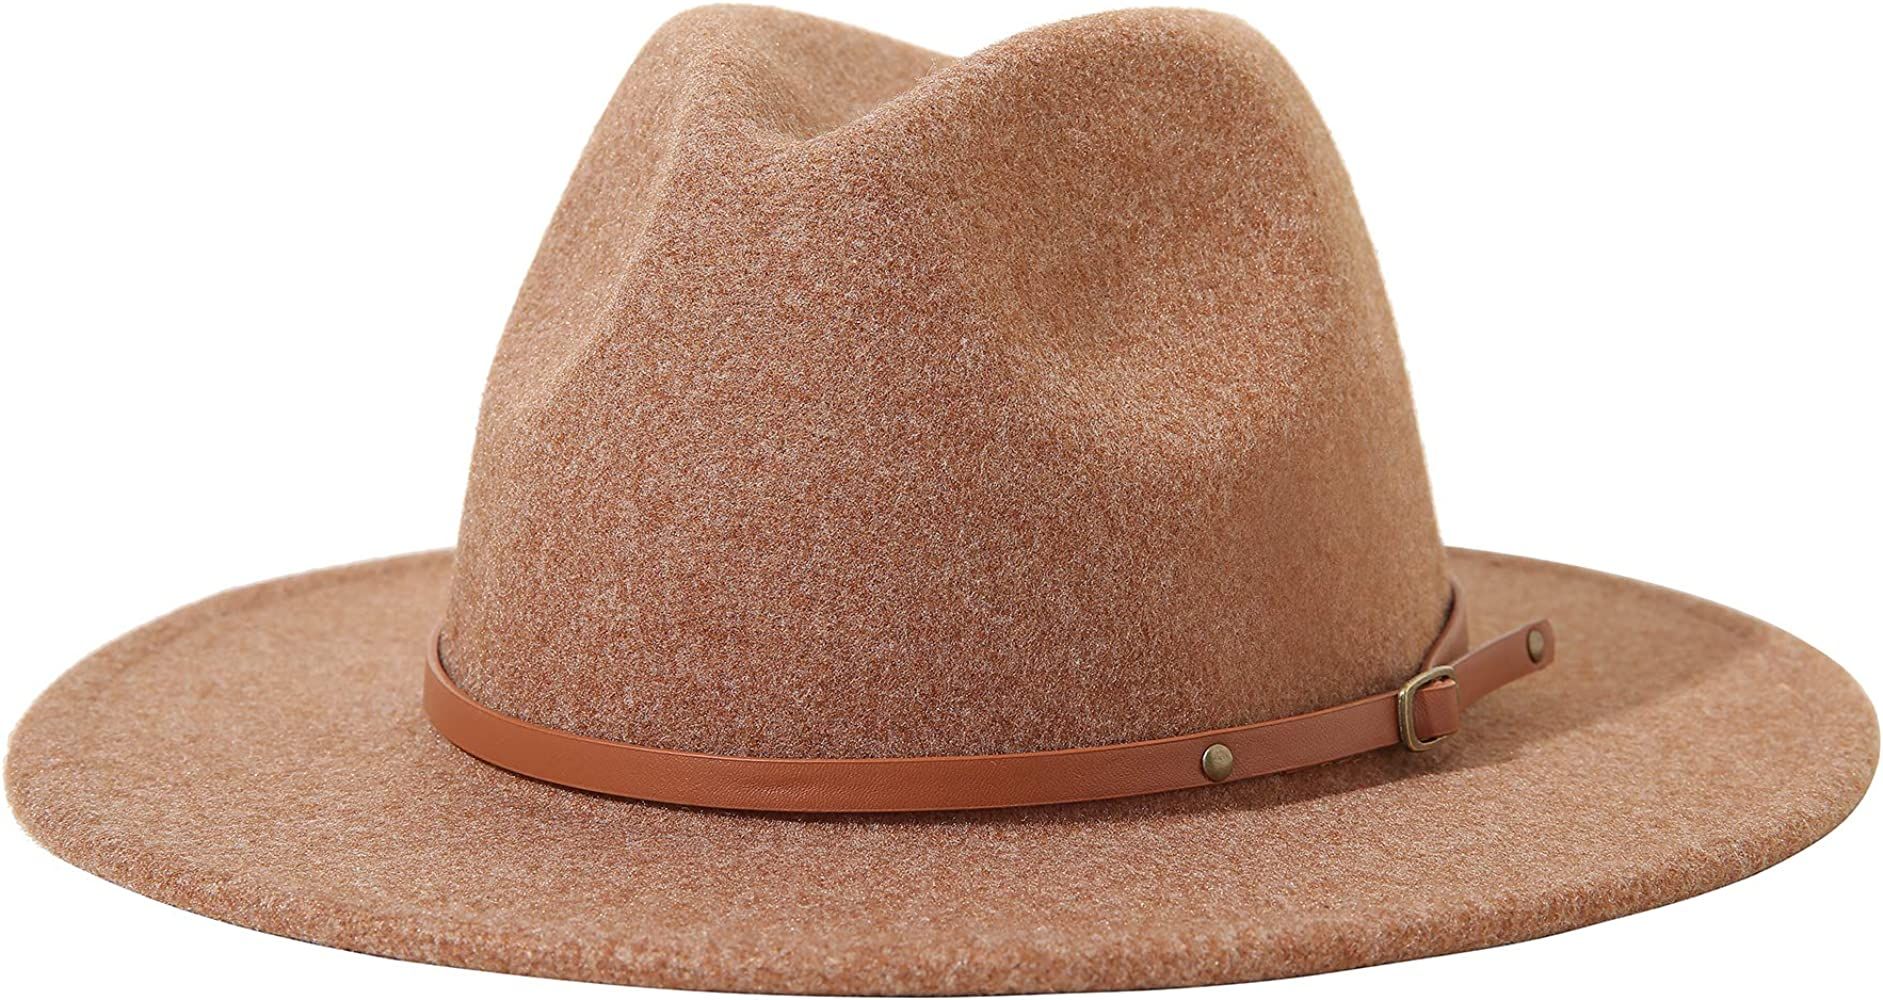 Lanzom Women Lady Felt Fedora Hat Wide Brim Wool Panama Hats with Band Fit Size 6 8/7-7 1/4 | Amazon (US)